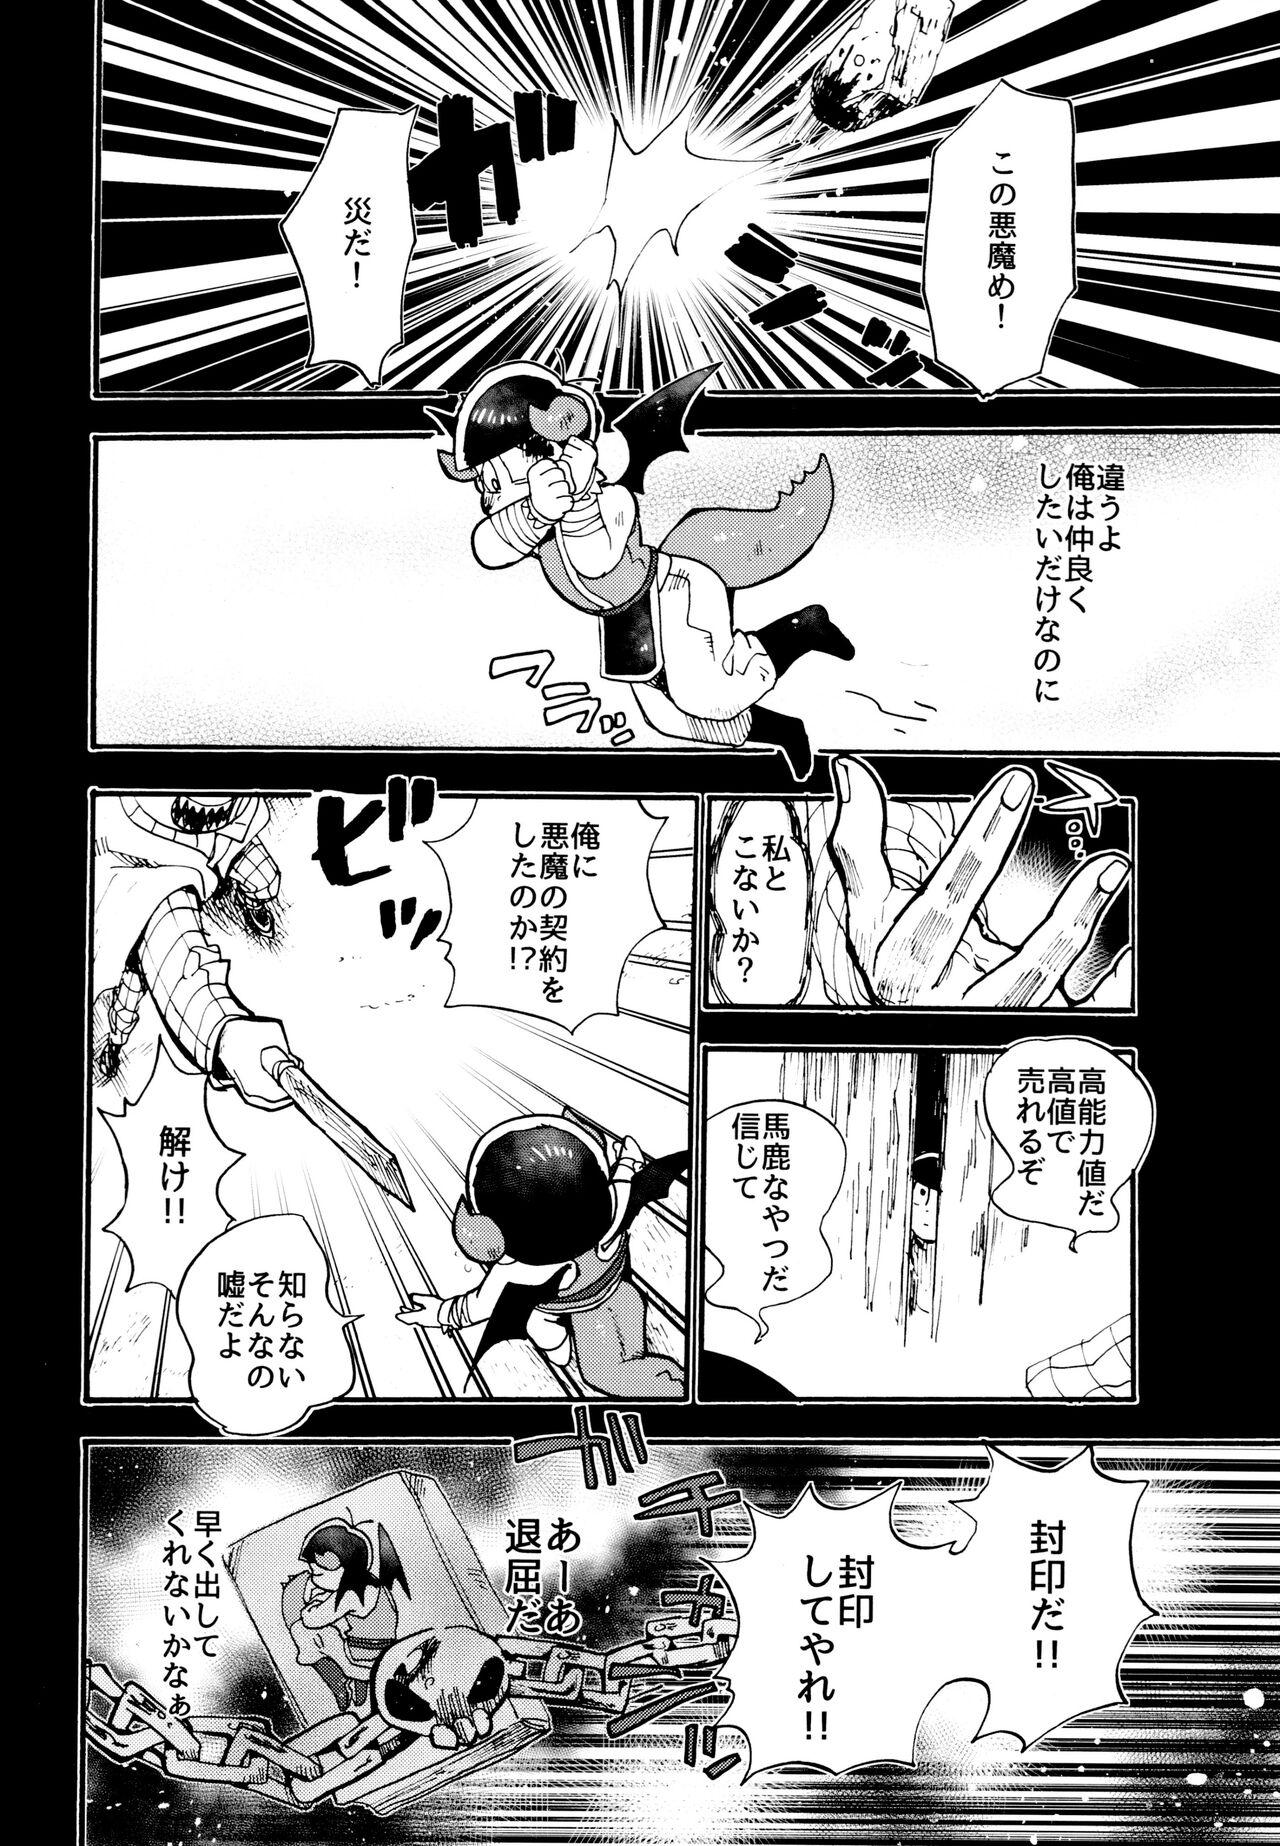 Stripper Hoshi no Kioku 2 - Osomatsu-san Siririca - Page 3